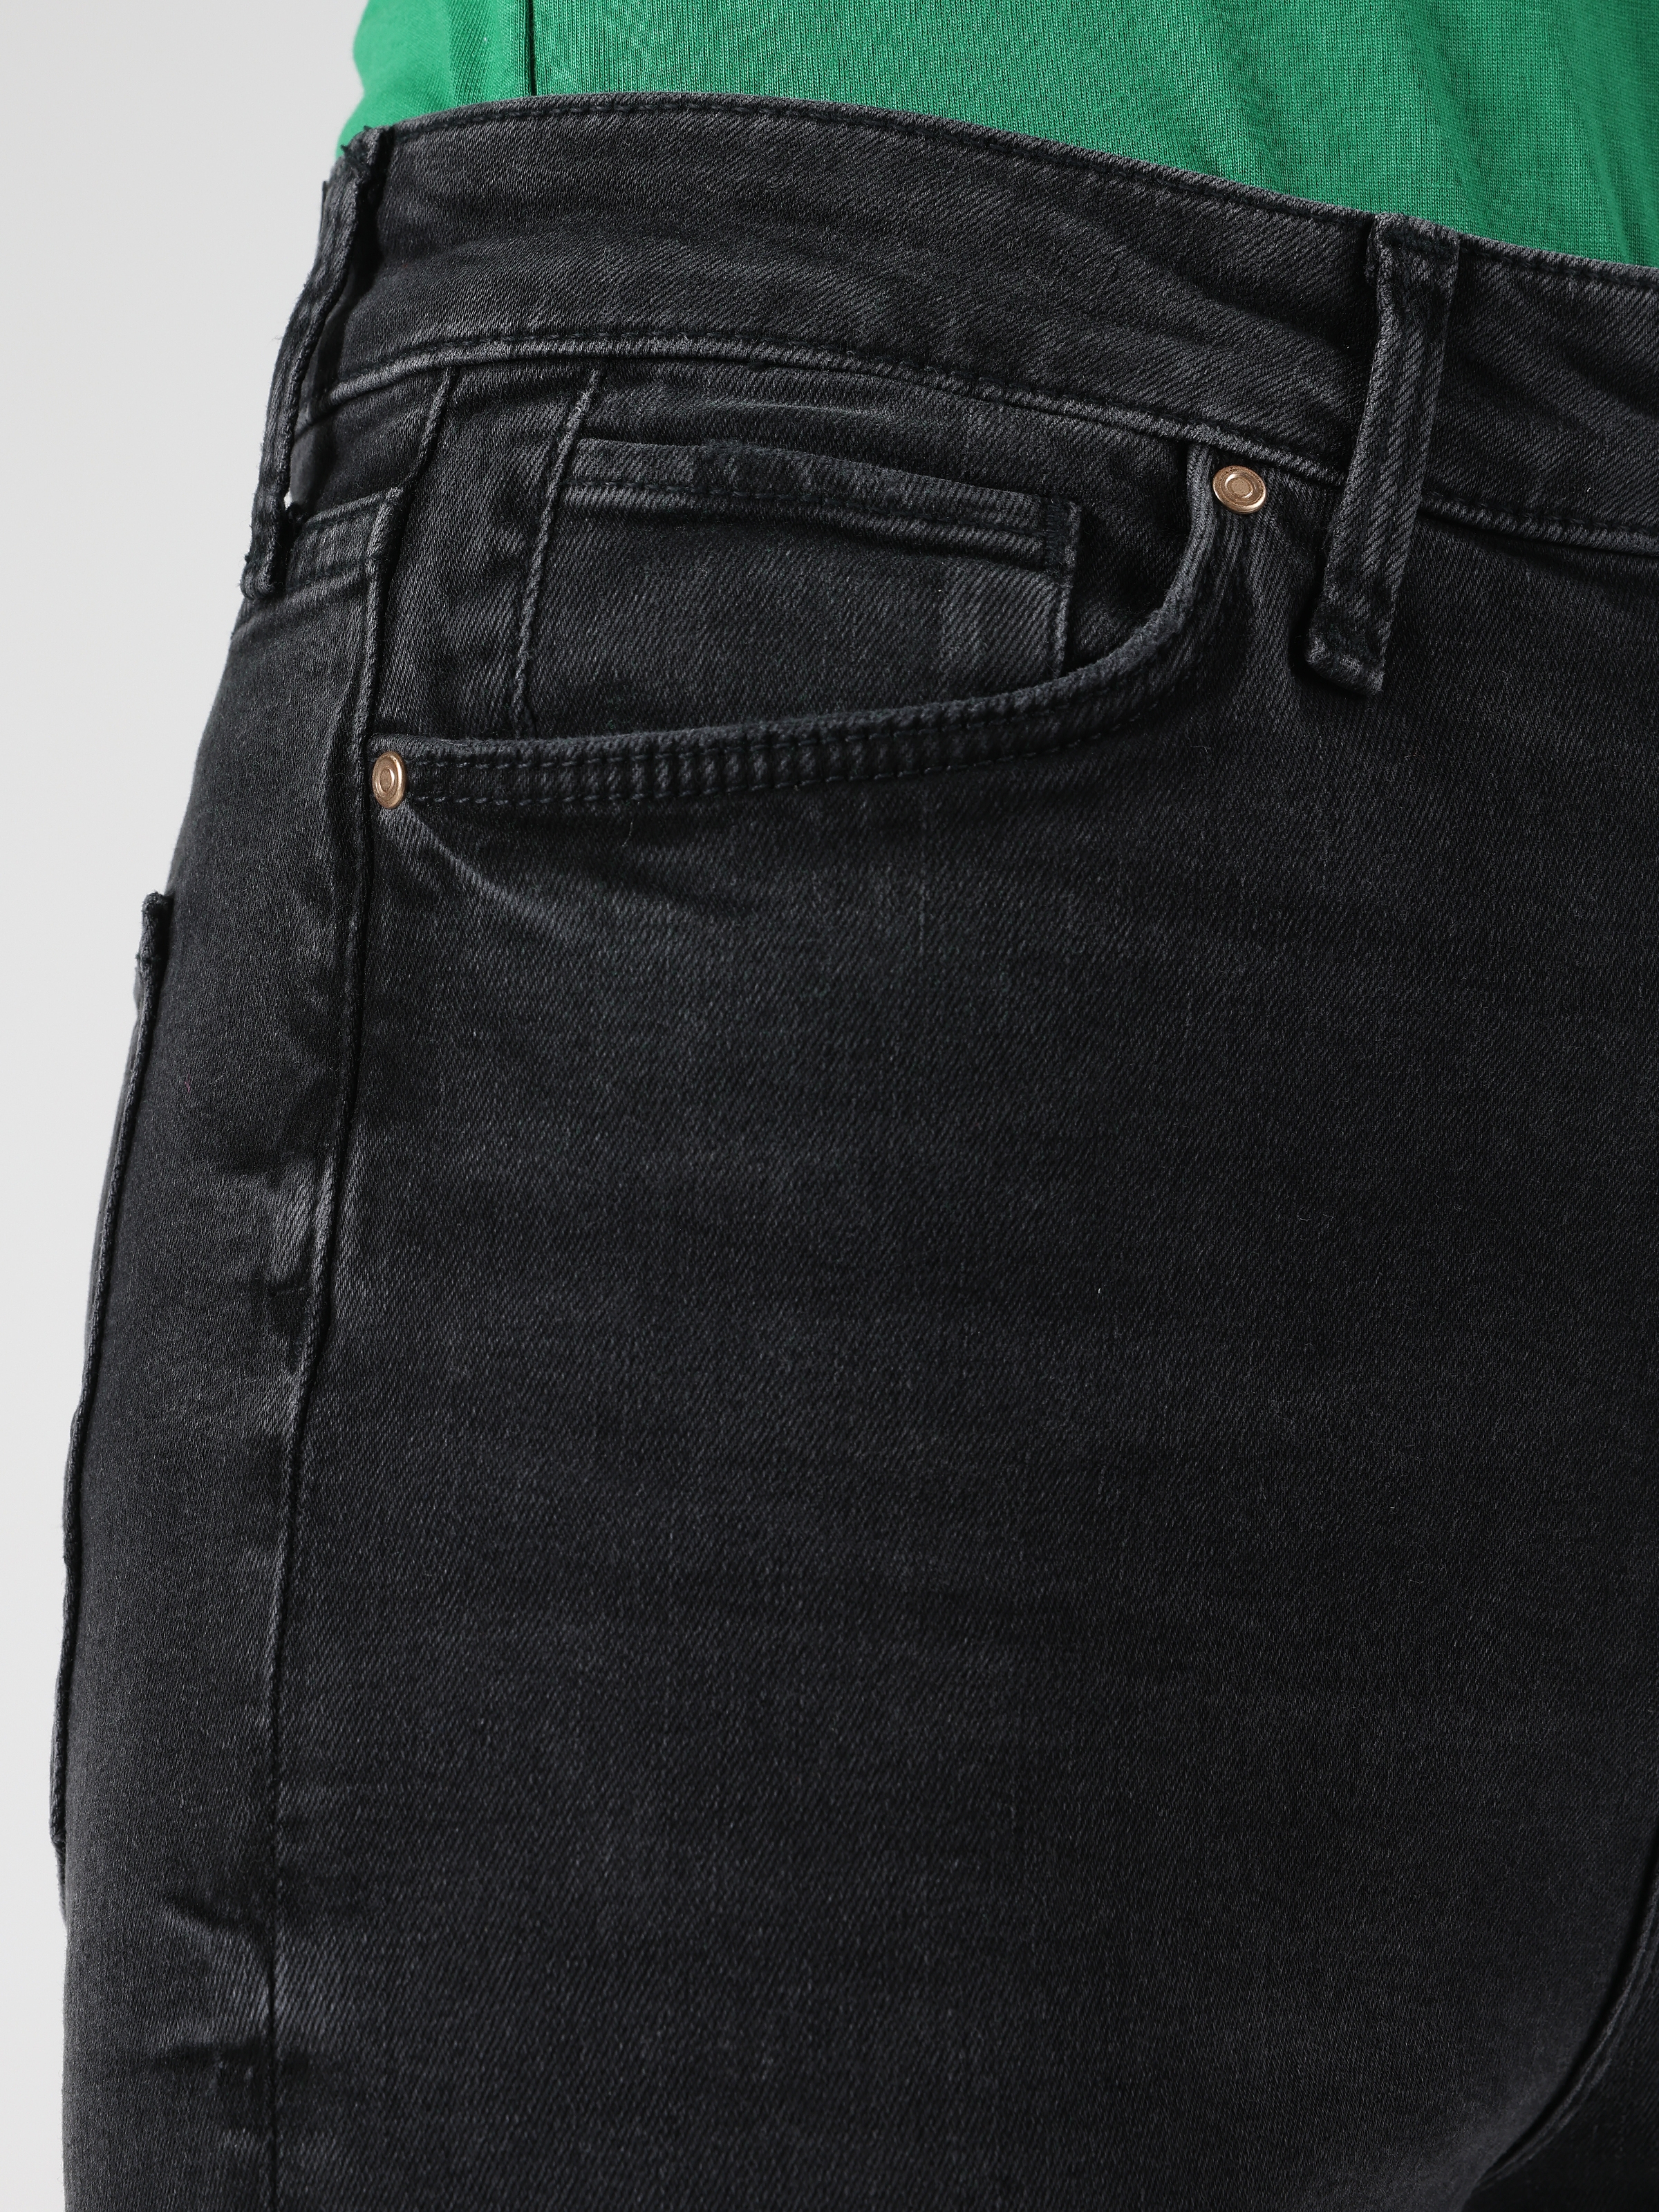 Afficher les détails de Pantalon En Jean Gris Pour Femmes, Coupe Régulière, Taille Normale, Jambes Larges, 791 Monıca